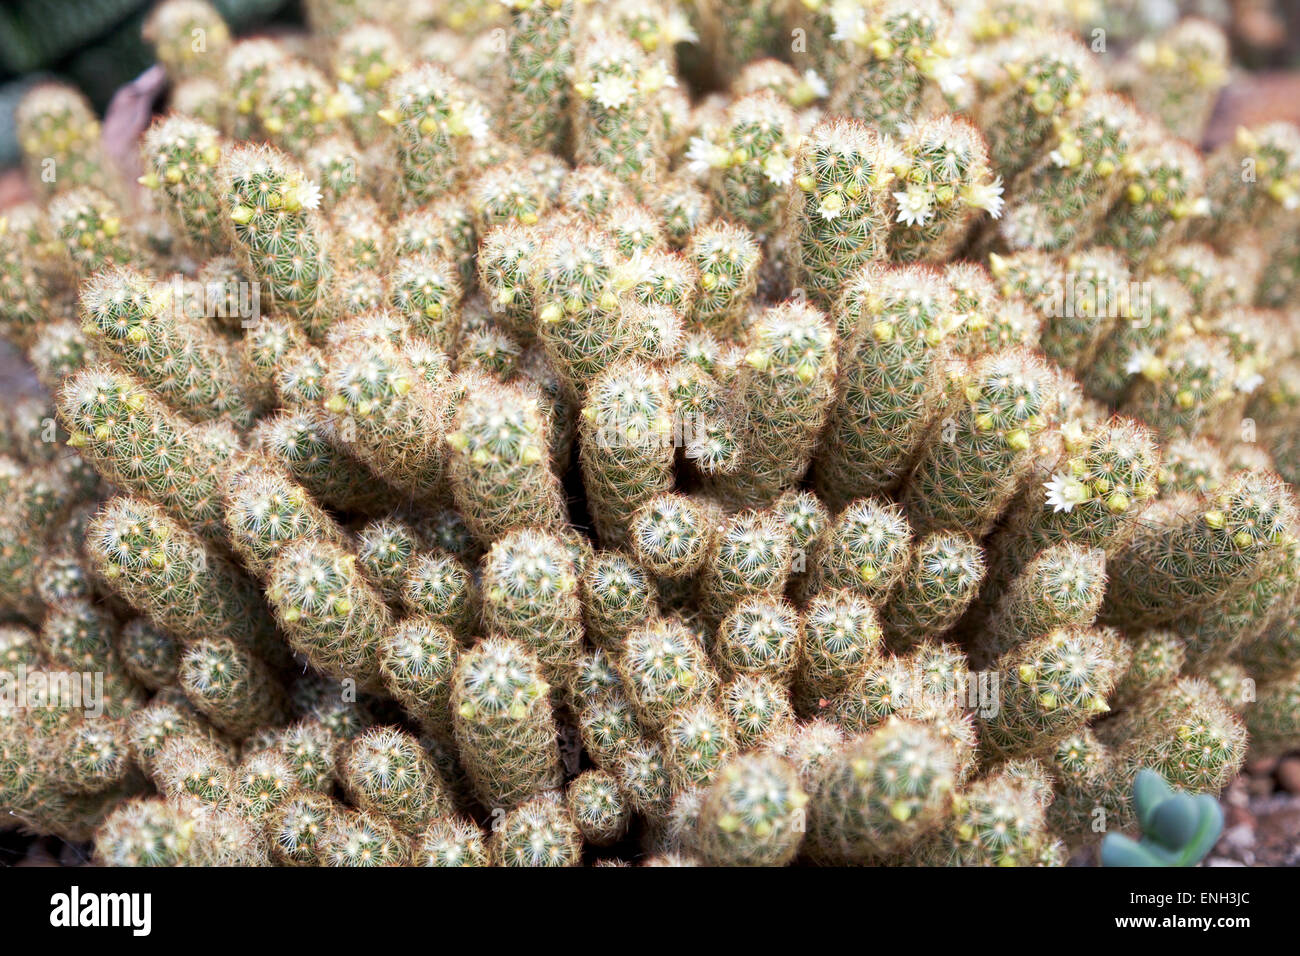 Gold lace cactus or ladyfinger cactus (mammillaria elongata) Stock Photo